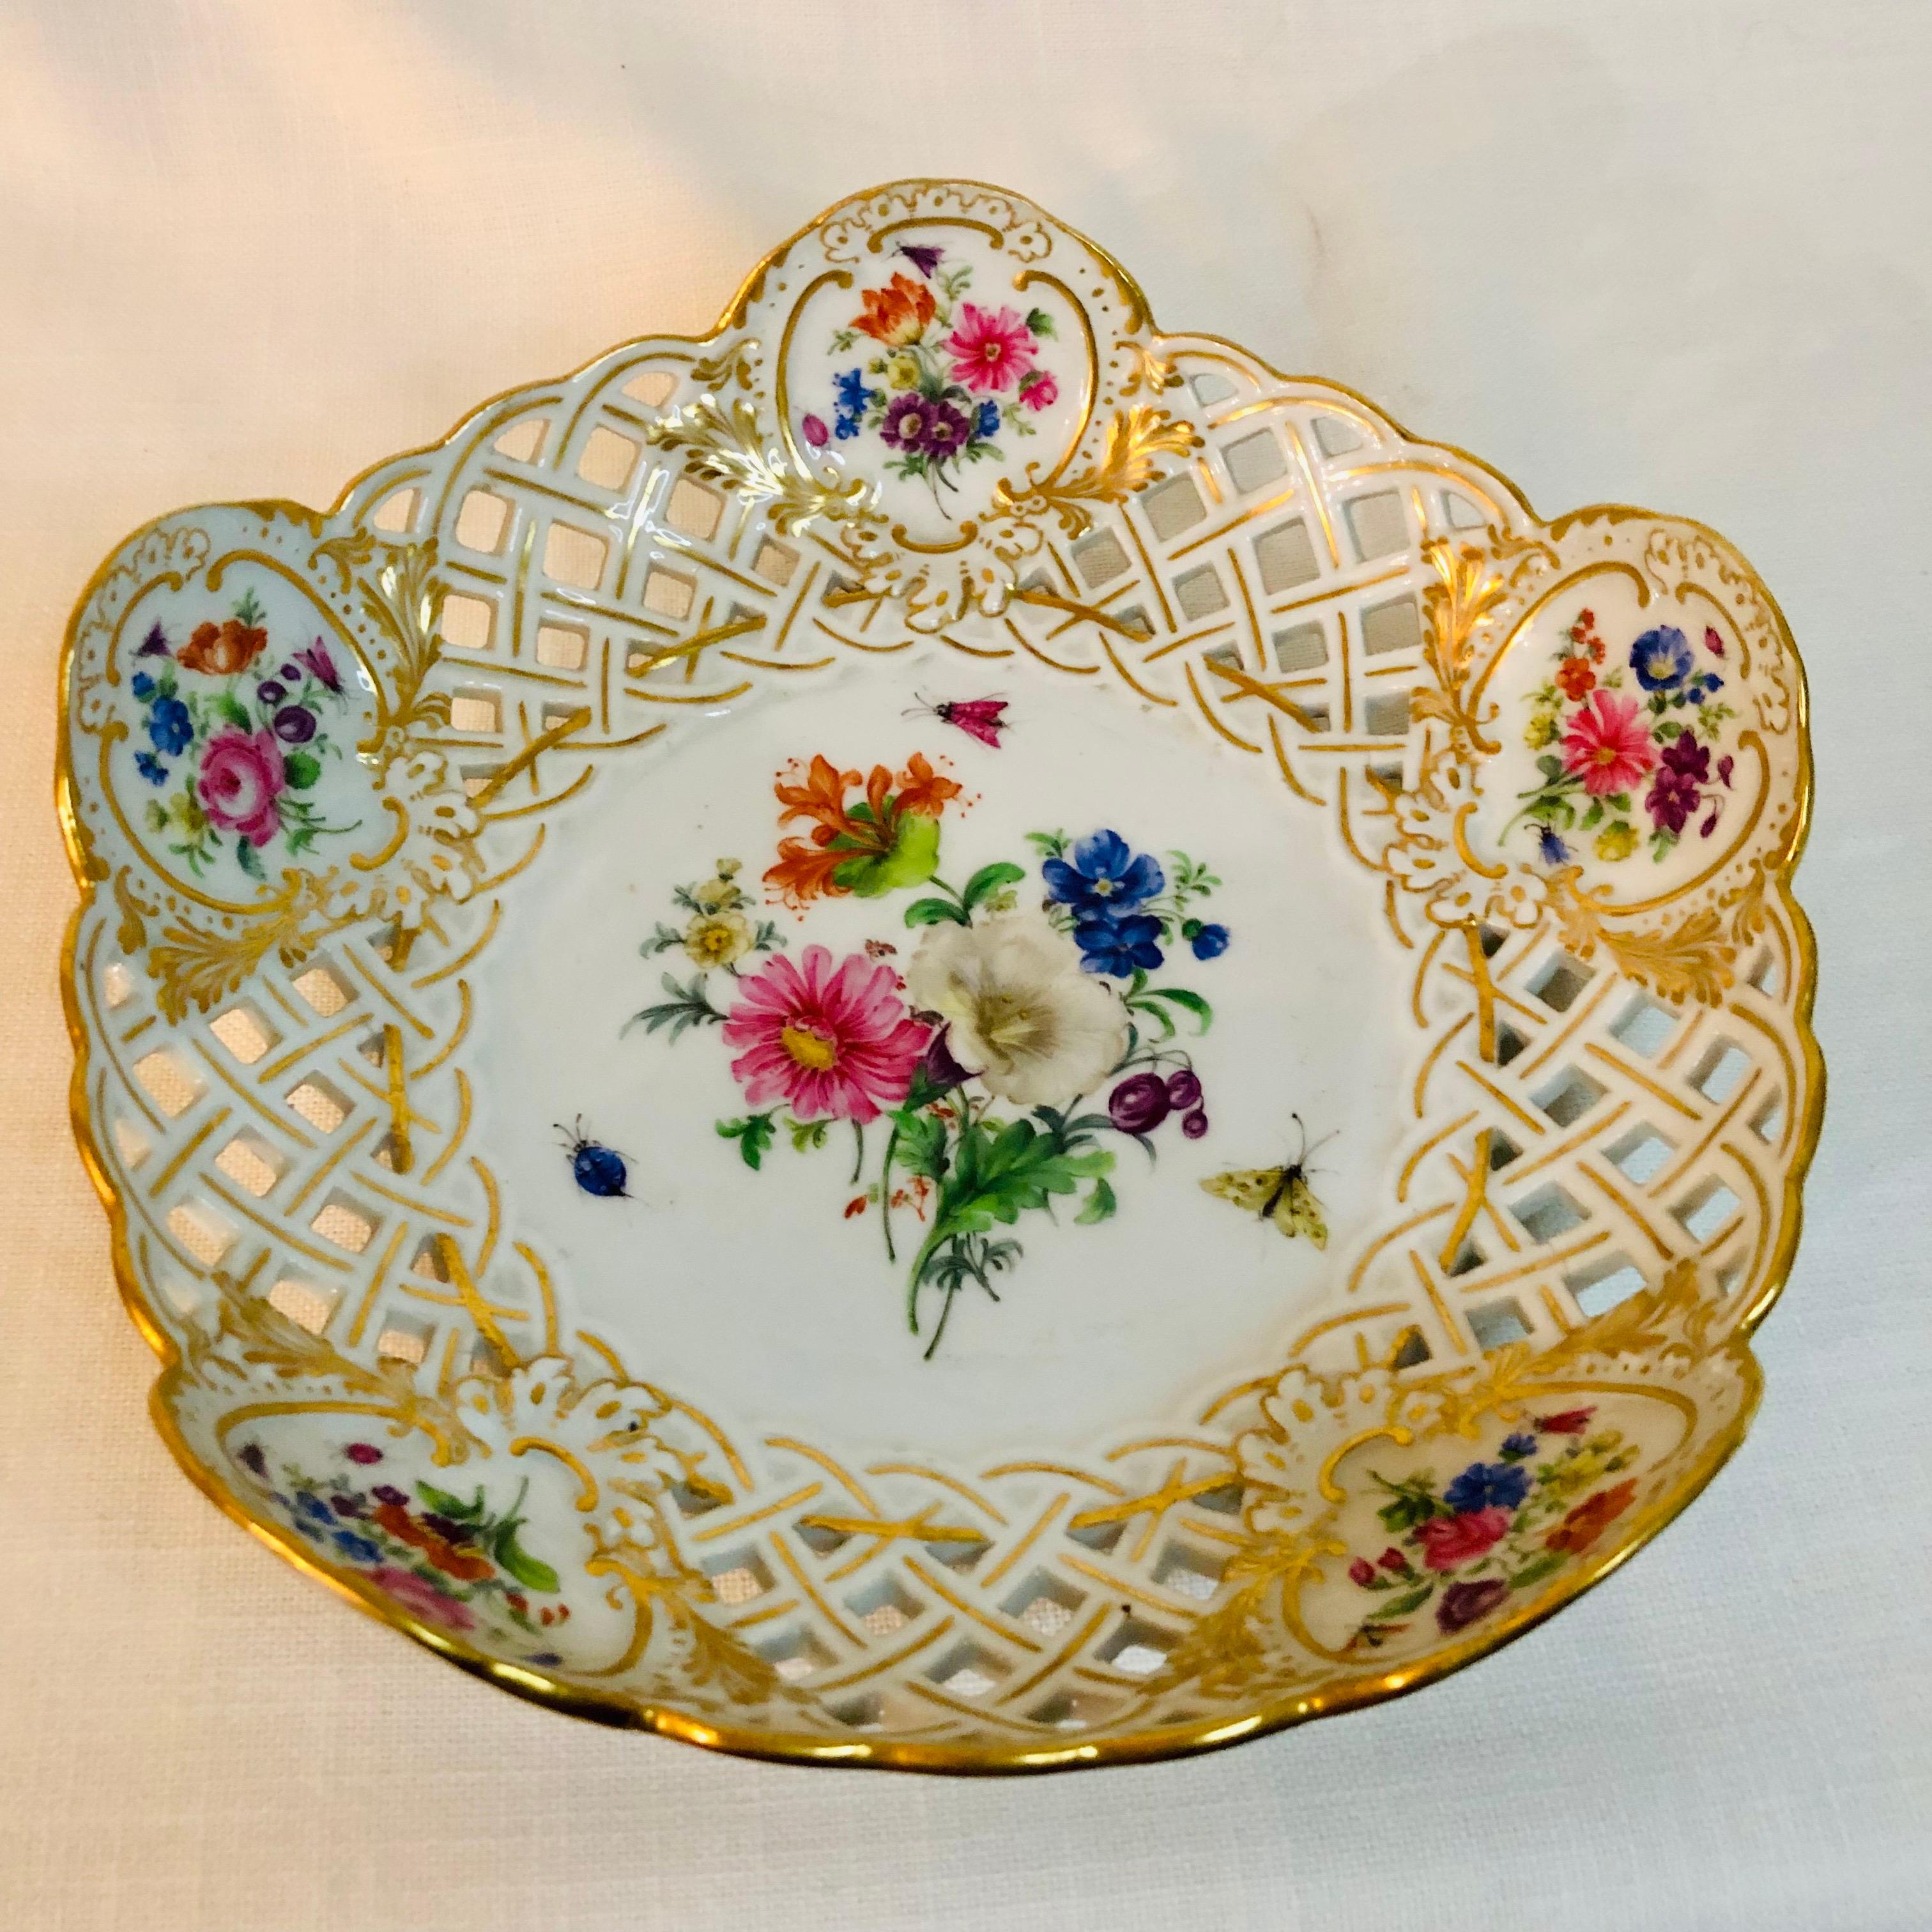 Je vous propose ce fabuleux bol cannelé réticulé Meissen des années 1880. Il présente un bouquet de fleurs central magnifiquement peint avec des accents d'insectes sur un fond de porcelaine blanche. À l'intérieur de la bordure dorée, on trouve cinq